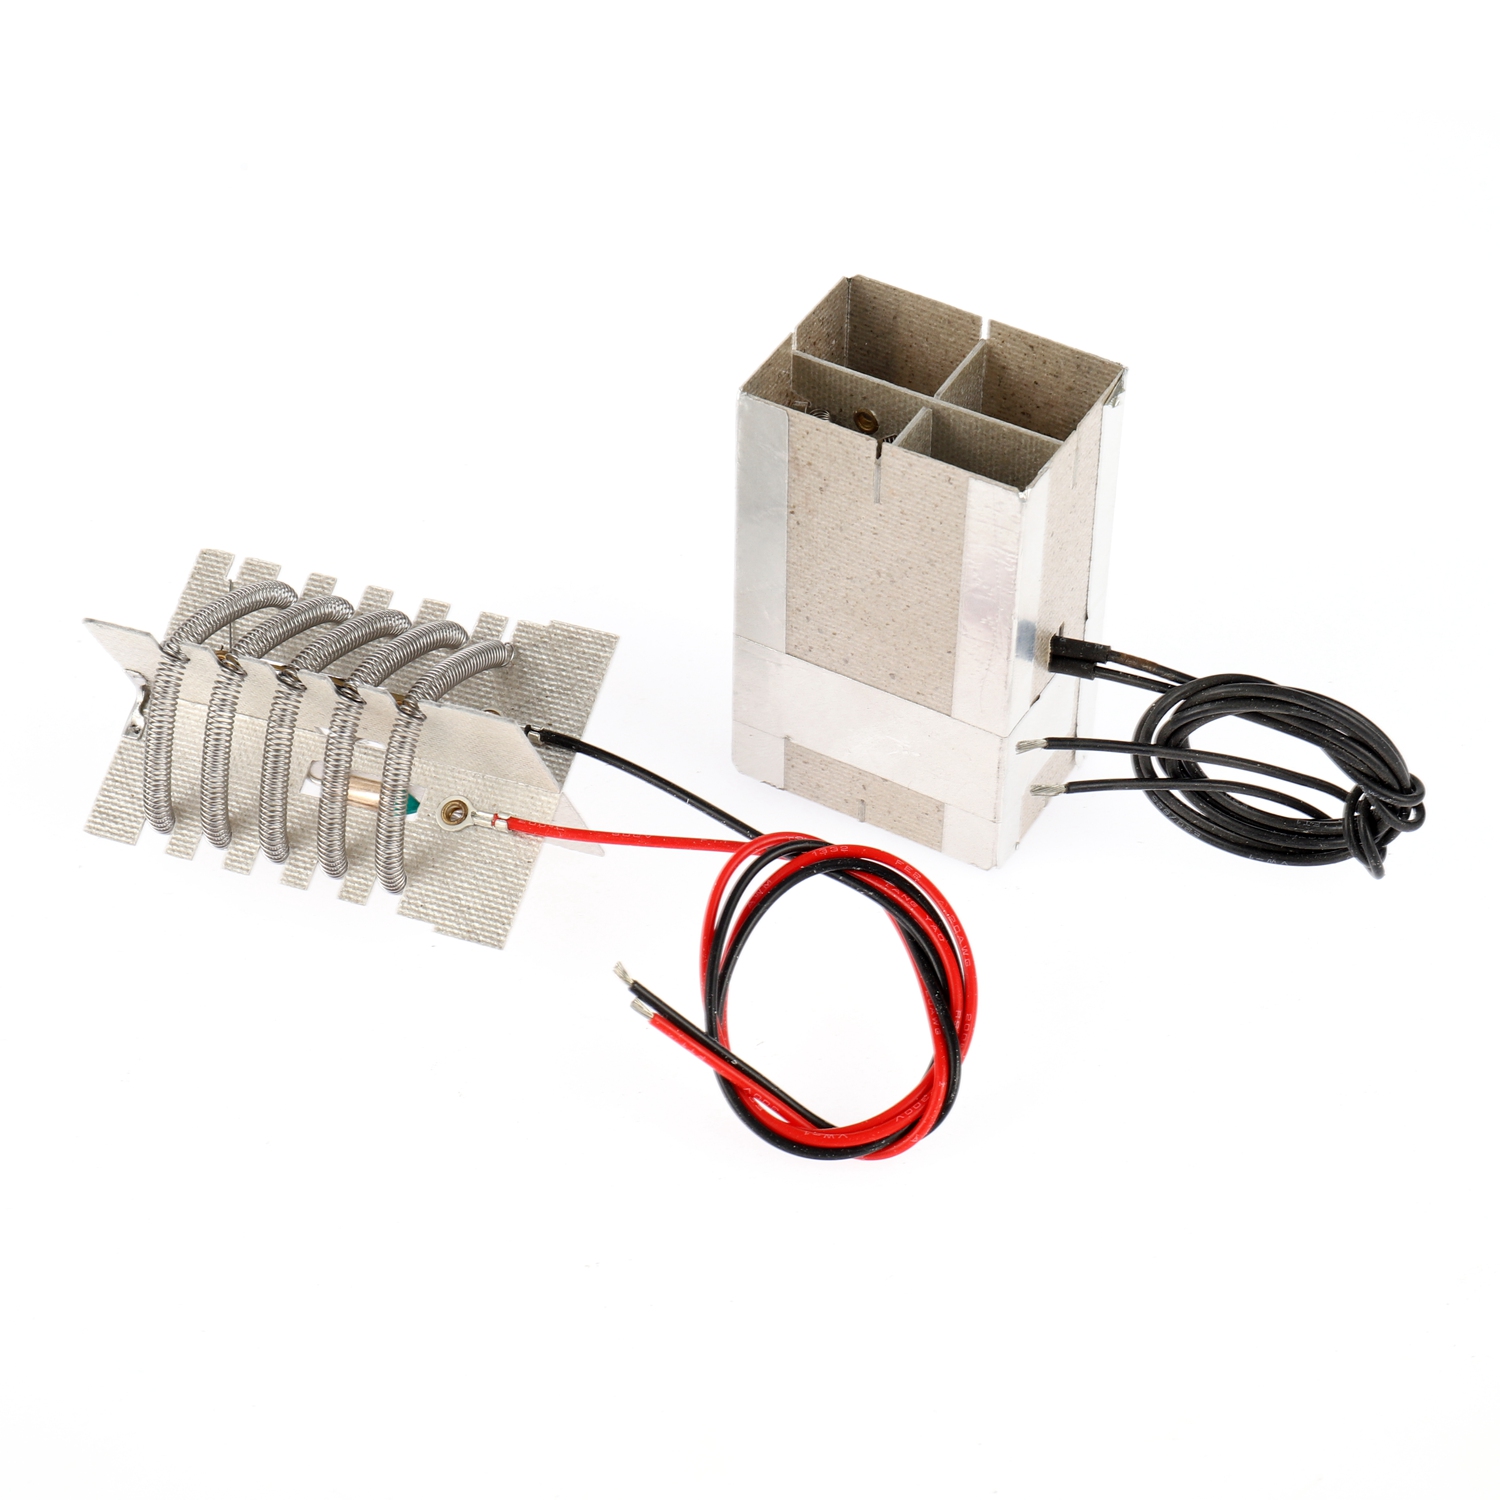 Cable calefactor de mica, Calentador de inodoro inteligente, Aplicación de elemento calefactor de mica, Cable de secado de inodoro inteligente (3)